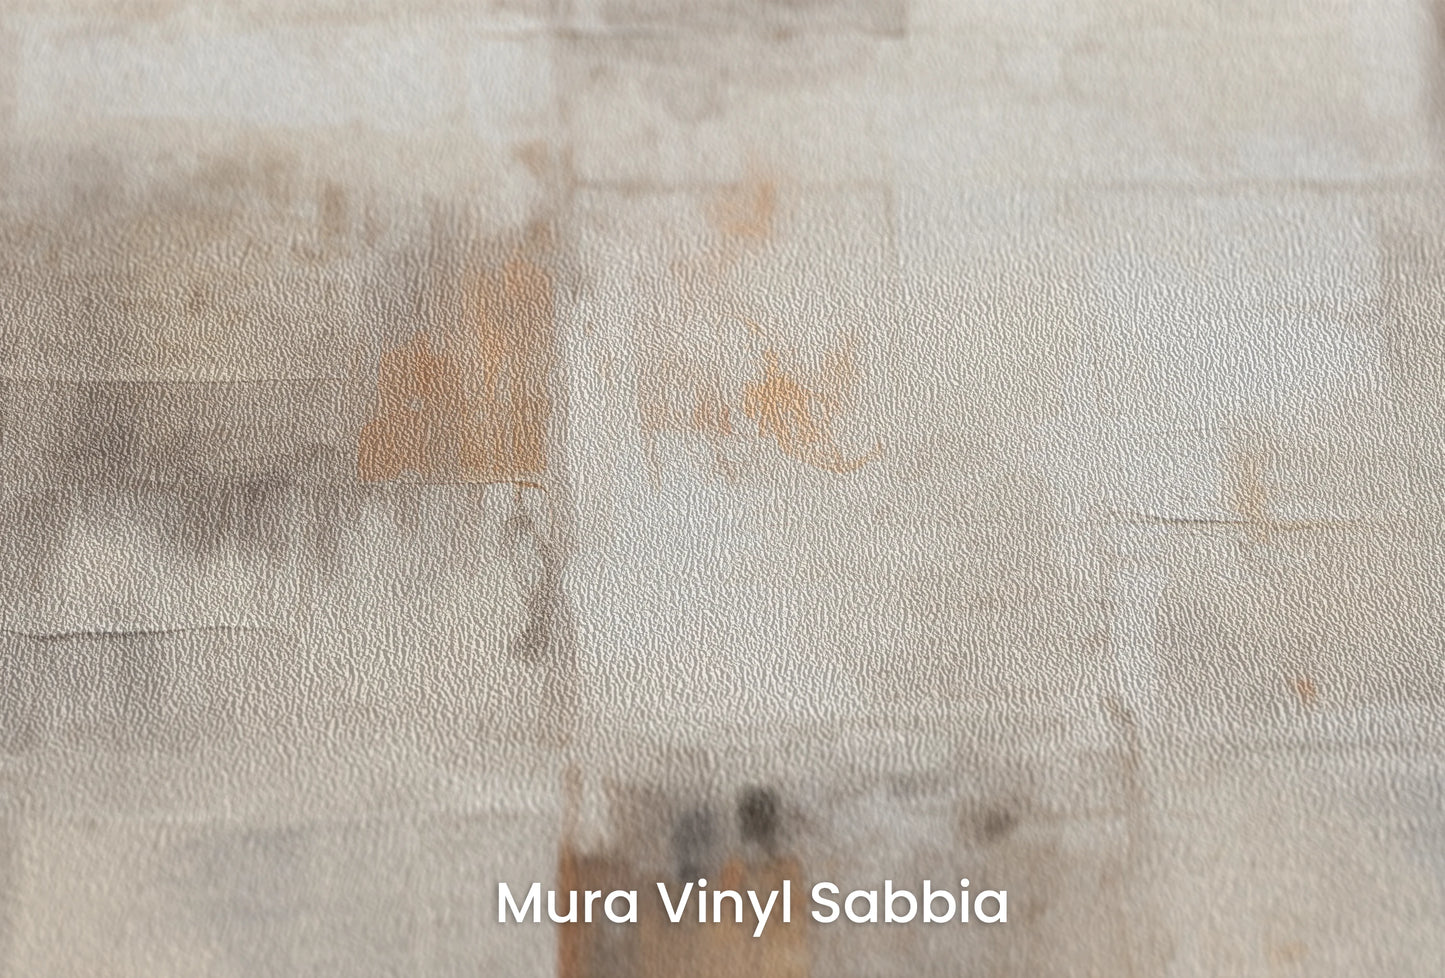 Zbliżenie na artystyczną fototapetę o nazwie Abstract Layers #2 na podłożu Mura Vinyl Sabbia struktura grubego ziarna piasku.